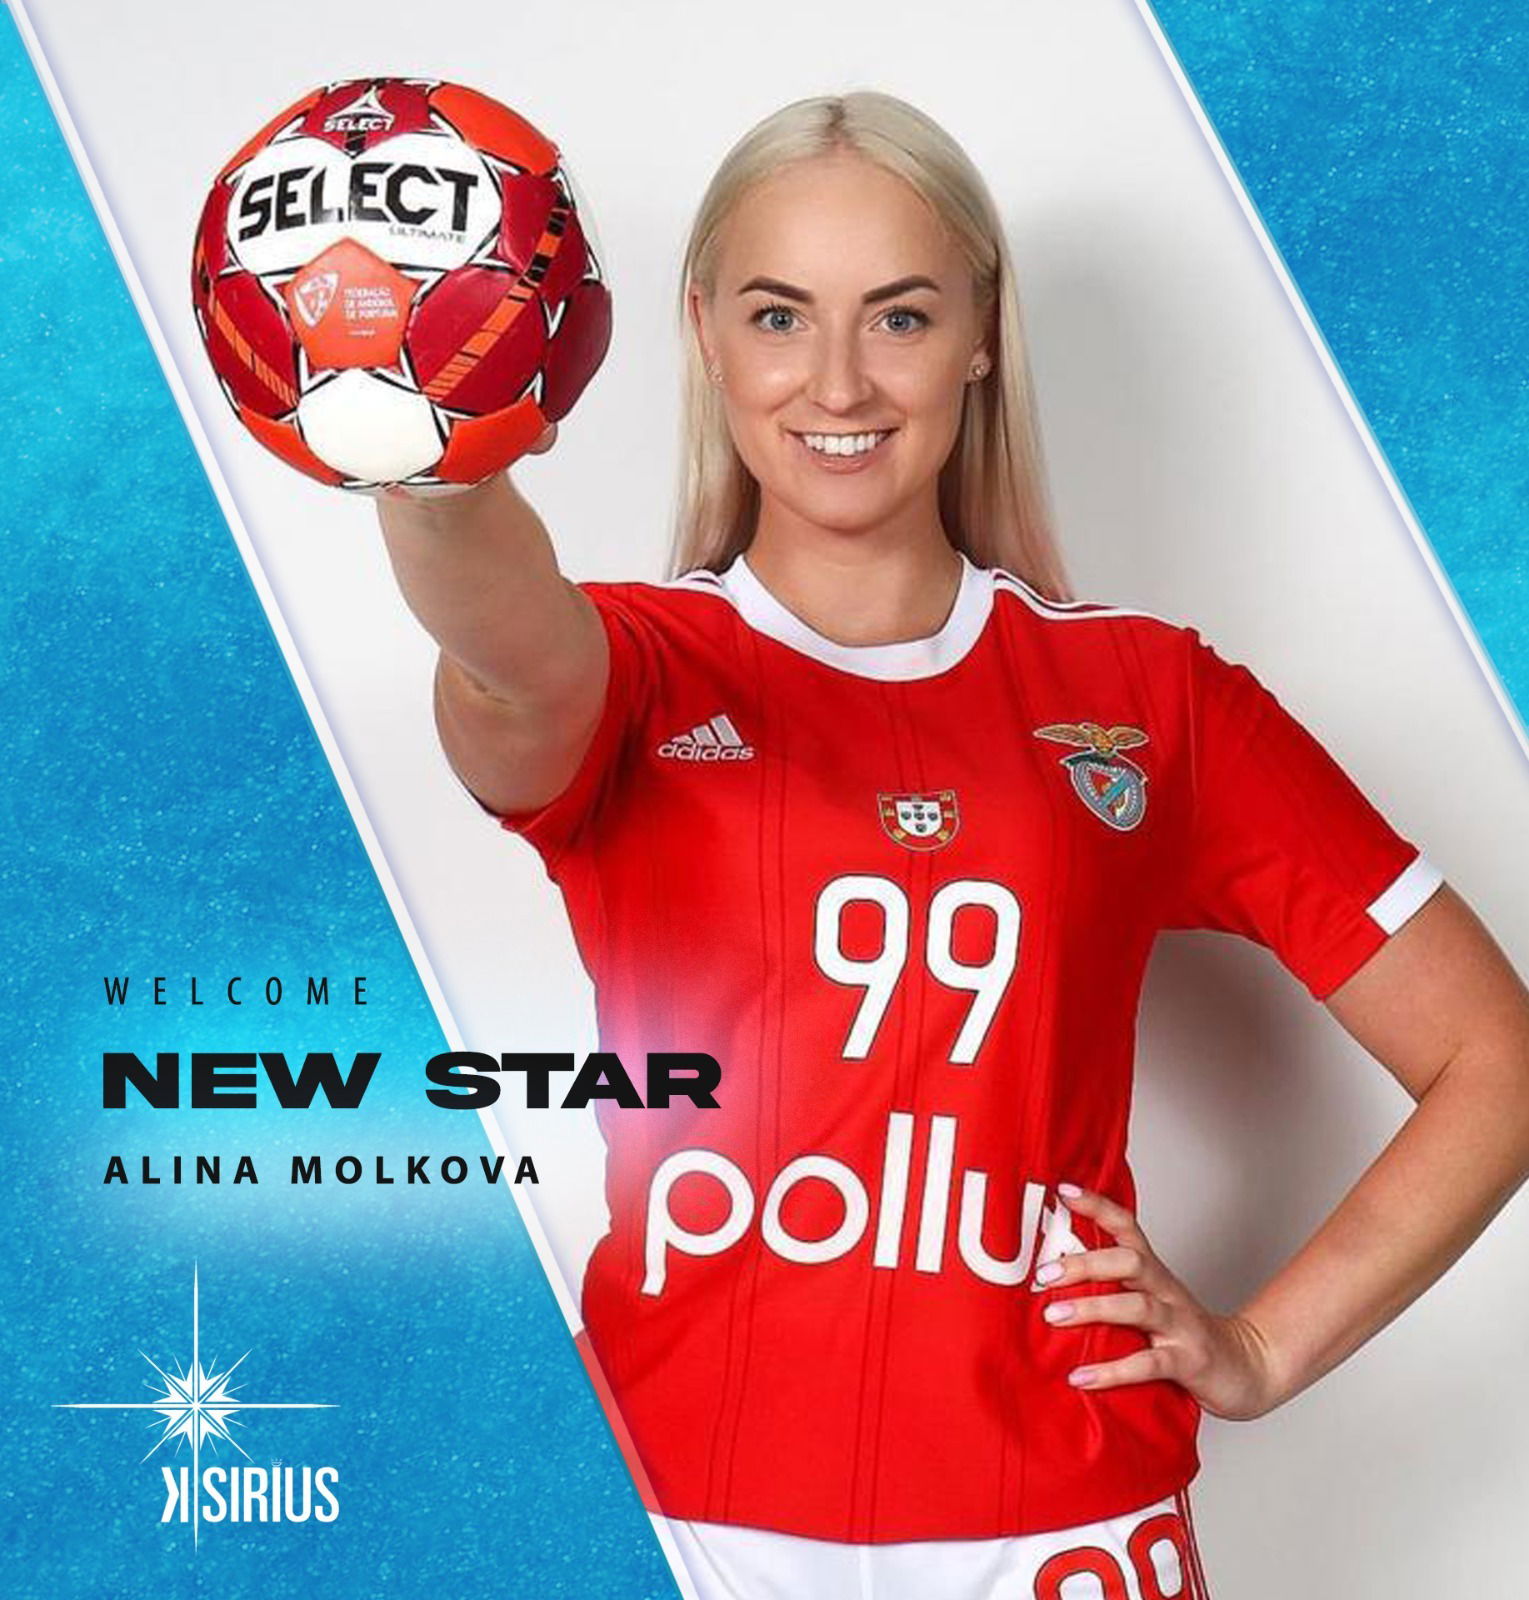 New Star: Alina Molkova (SL Benfica)